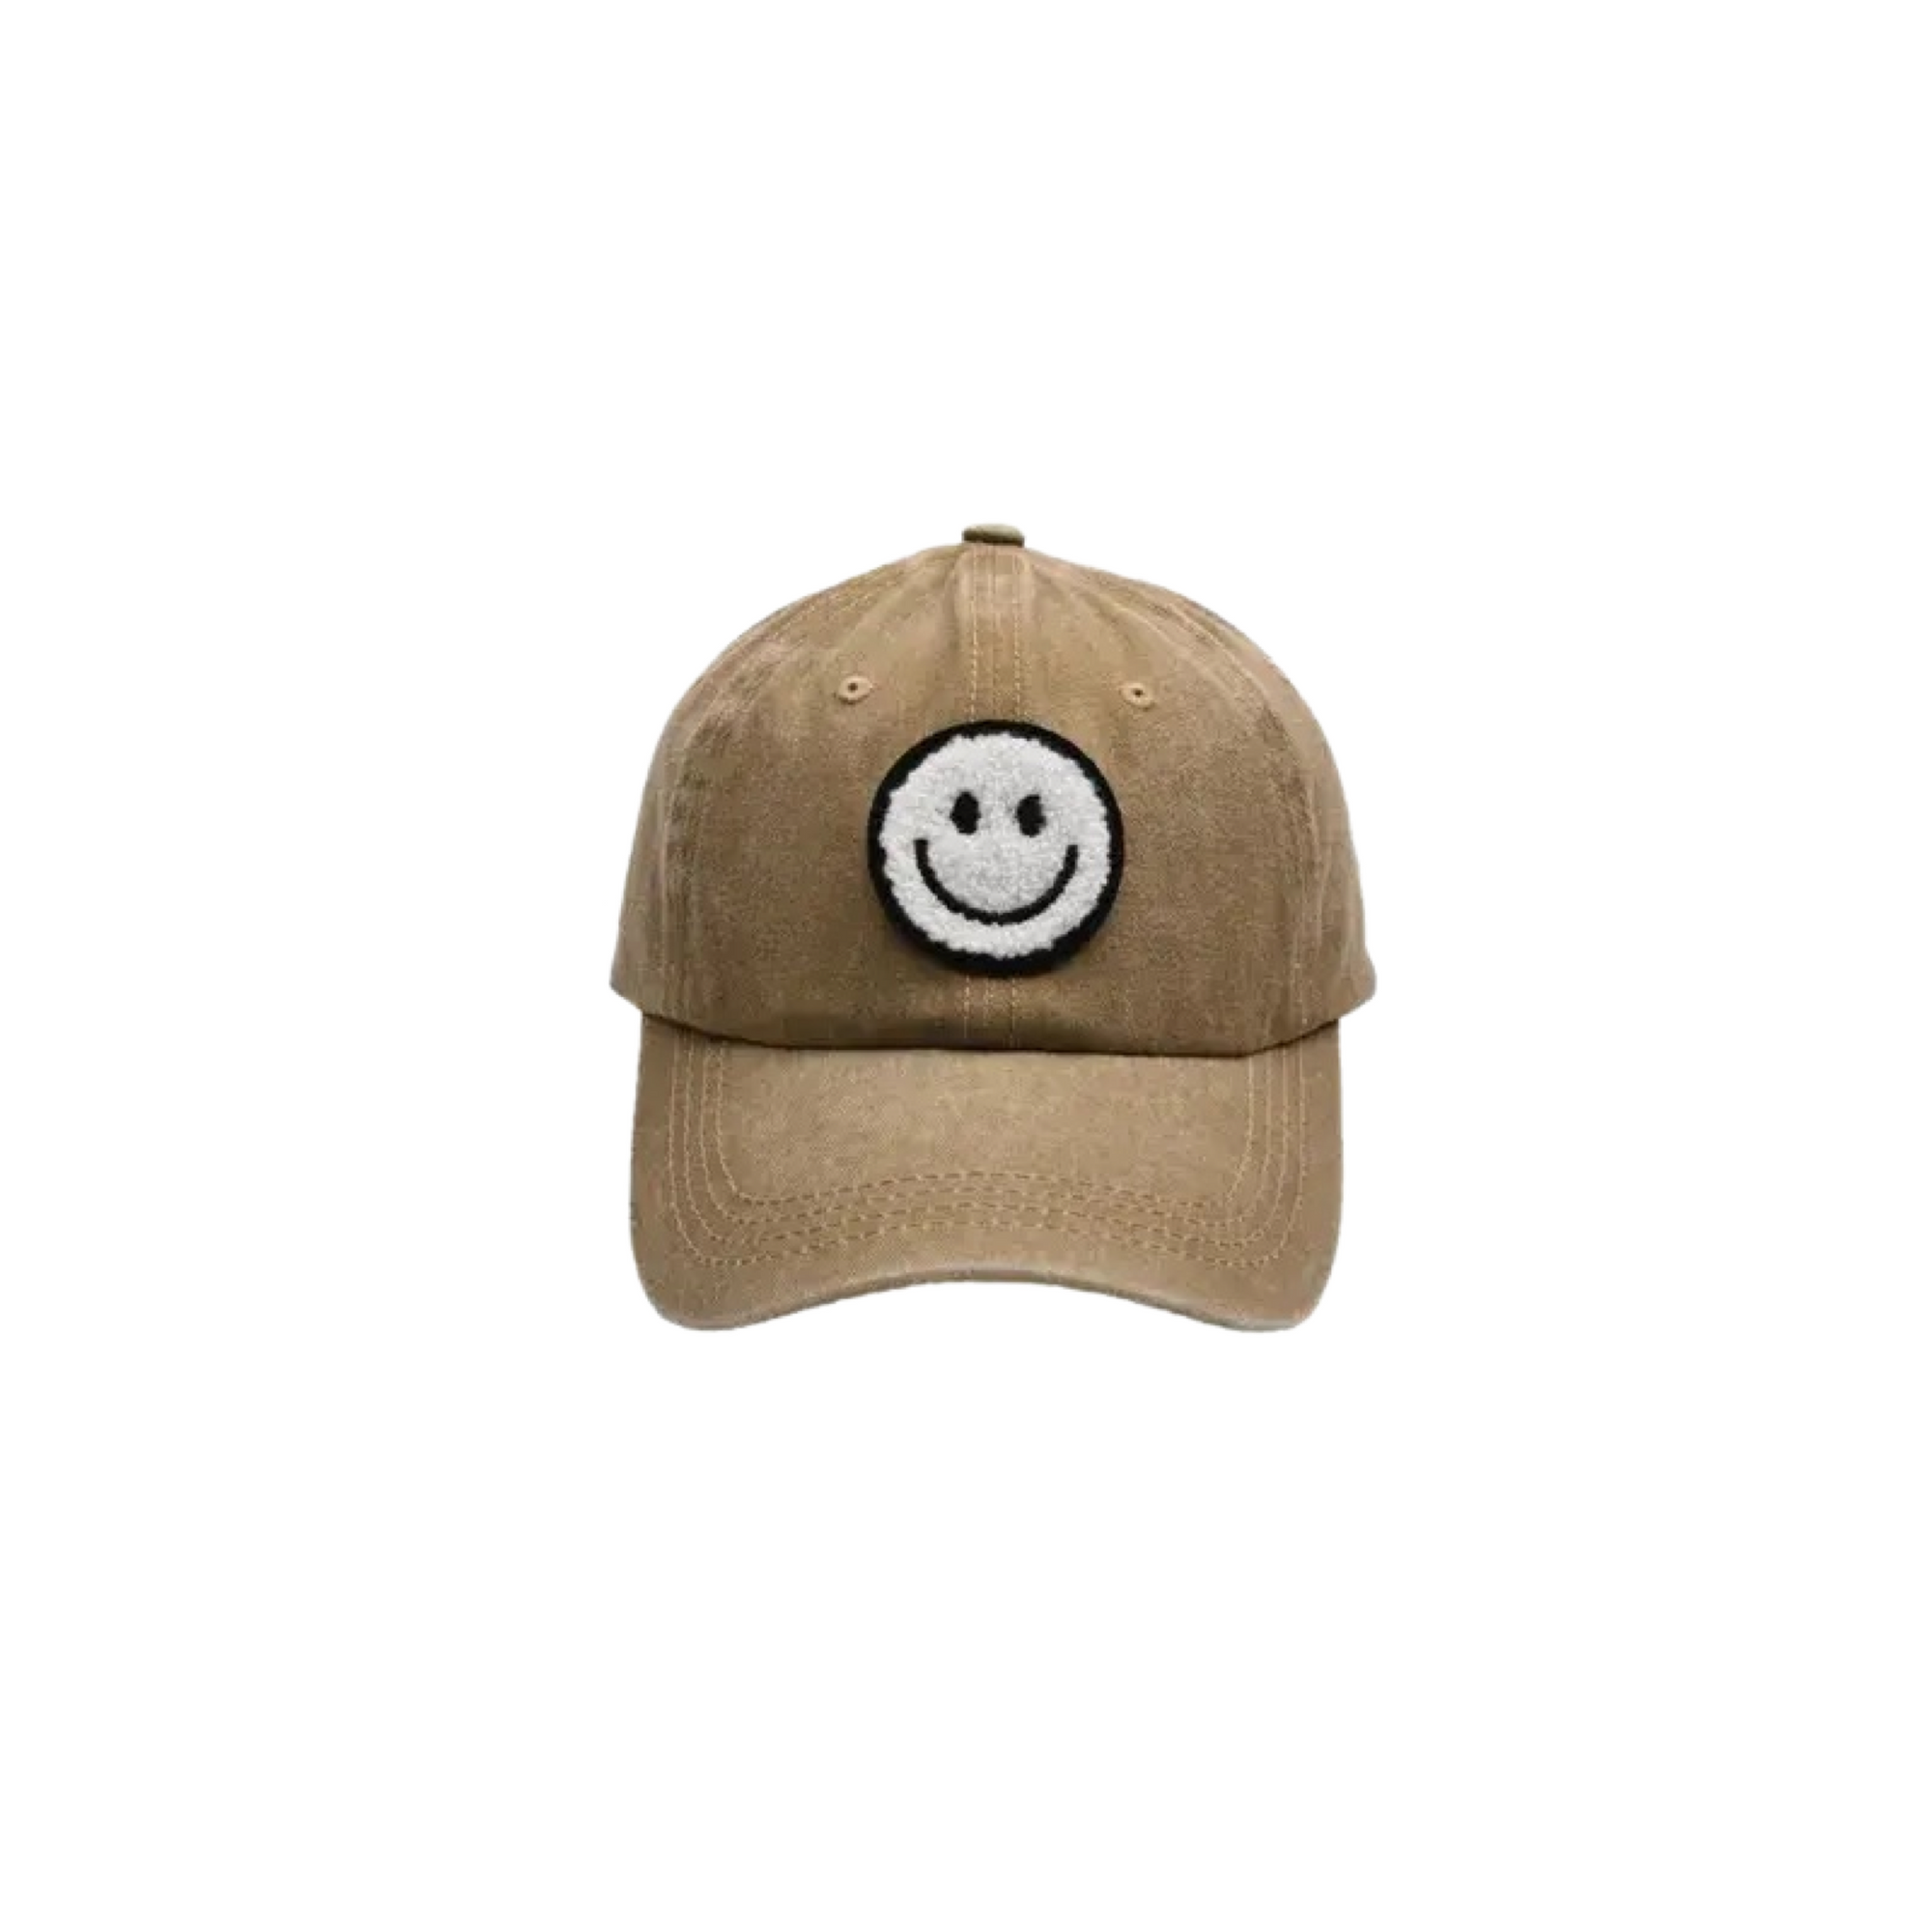 Smiley Face Ball Cap